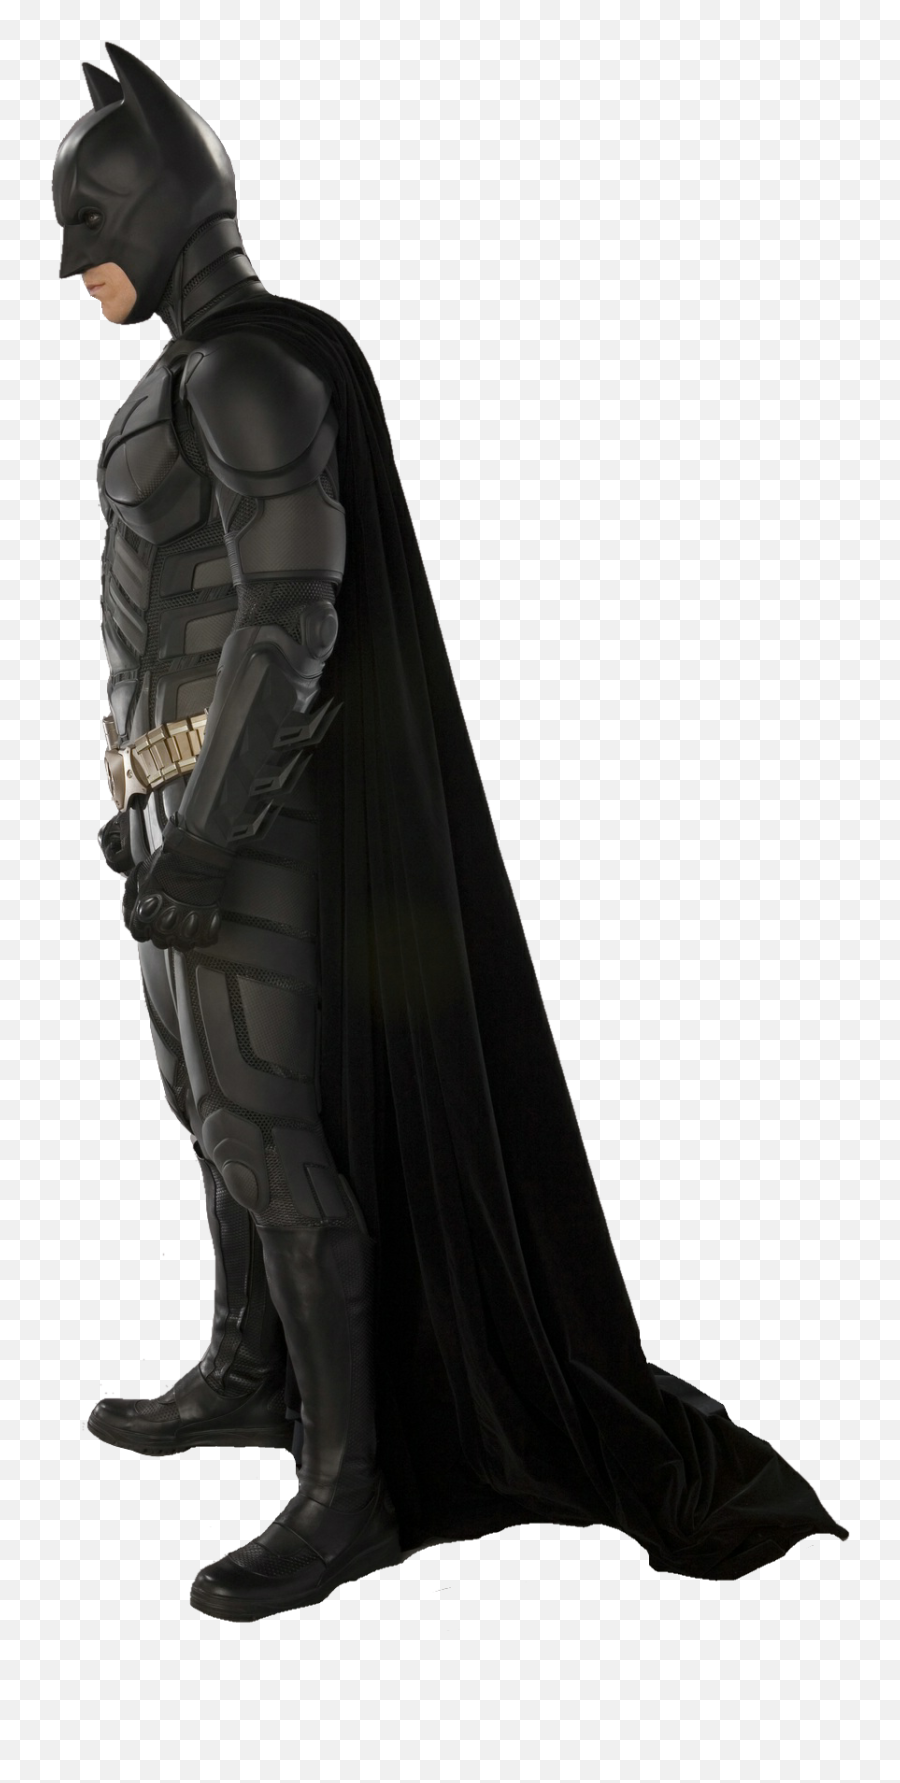 Dark Knight Batman Png Images Transparent Background Png Play - Batman Emoji,Batman Png